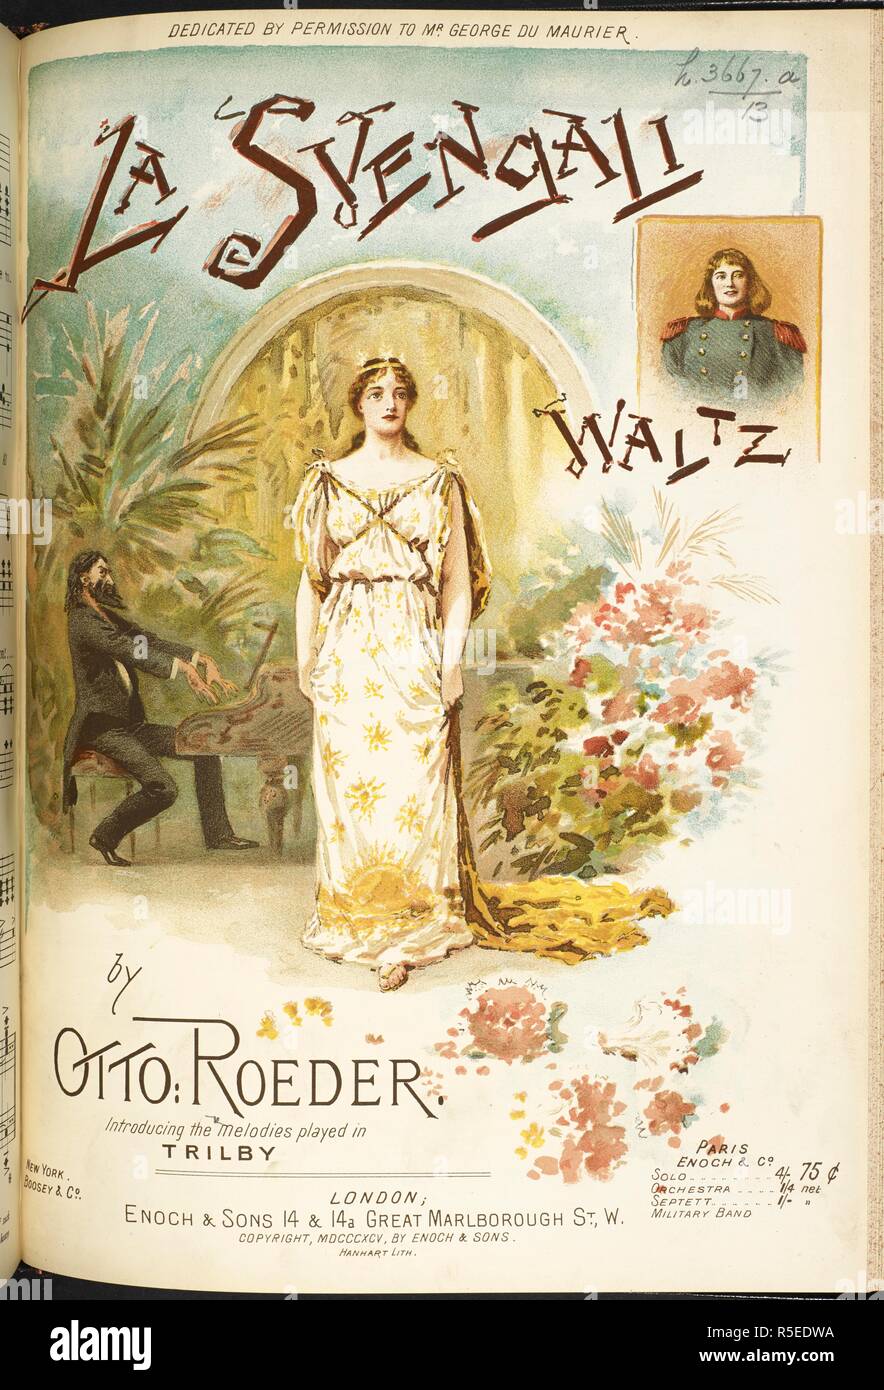 Coperchio di musica mostra Svengli. La Svengali. Valzer, introducendo le melodie hanno giocato in 'Trilby'. Londra : Enoch & Sons, 1895. Fonte: h.3667.a.(13). Autore: Roeder, Otto. Foto Stock